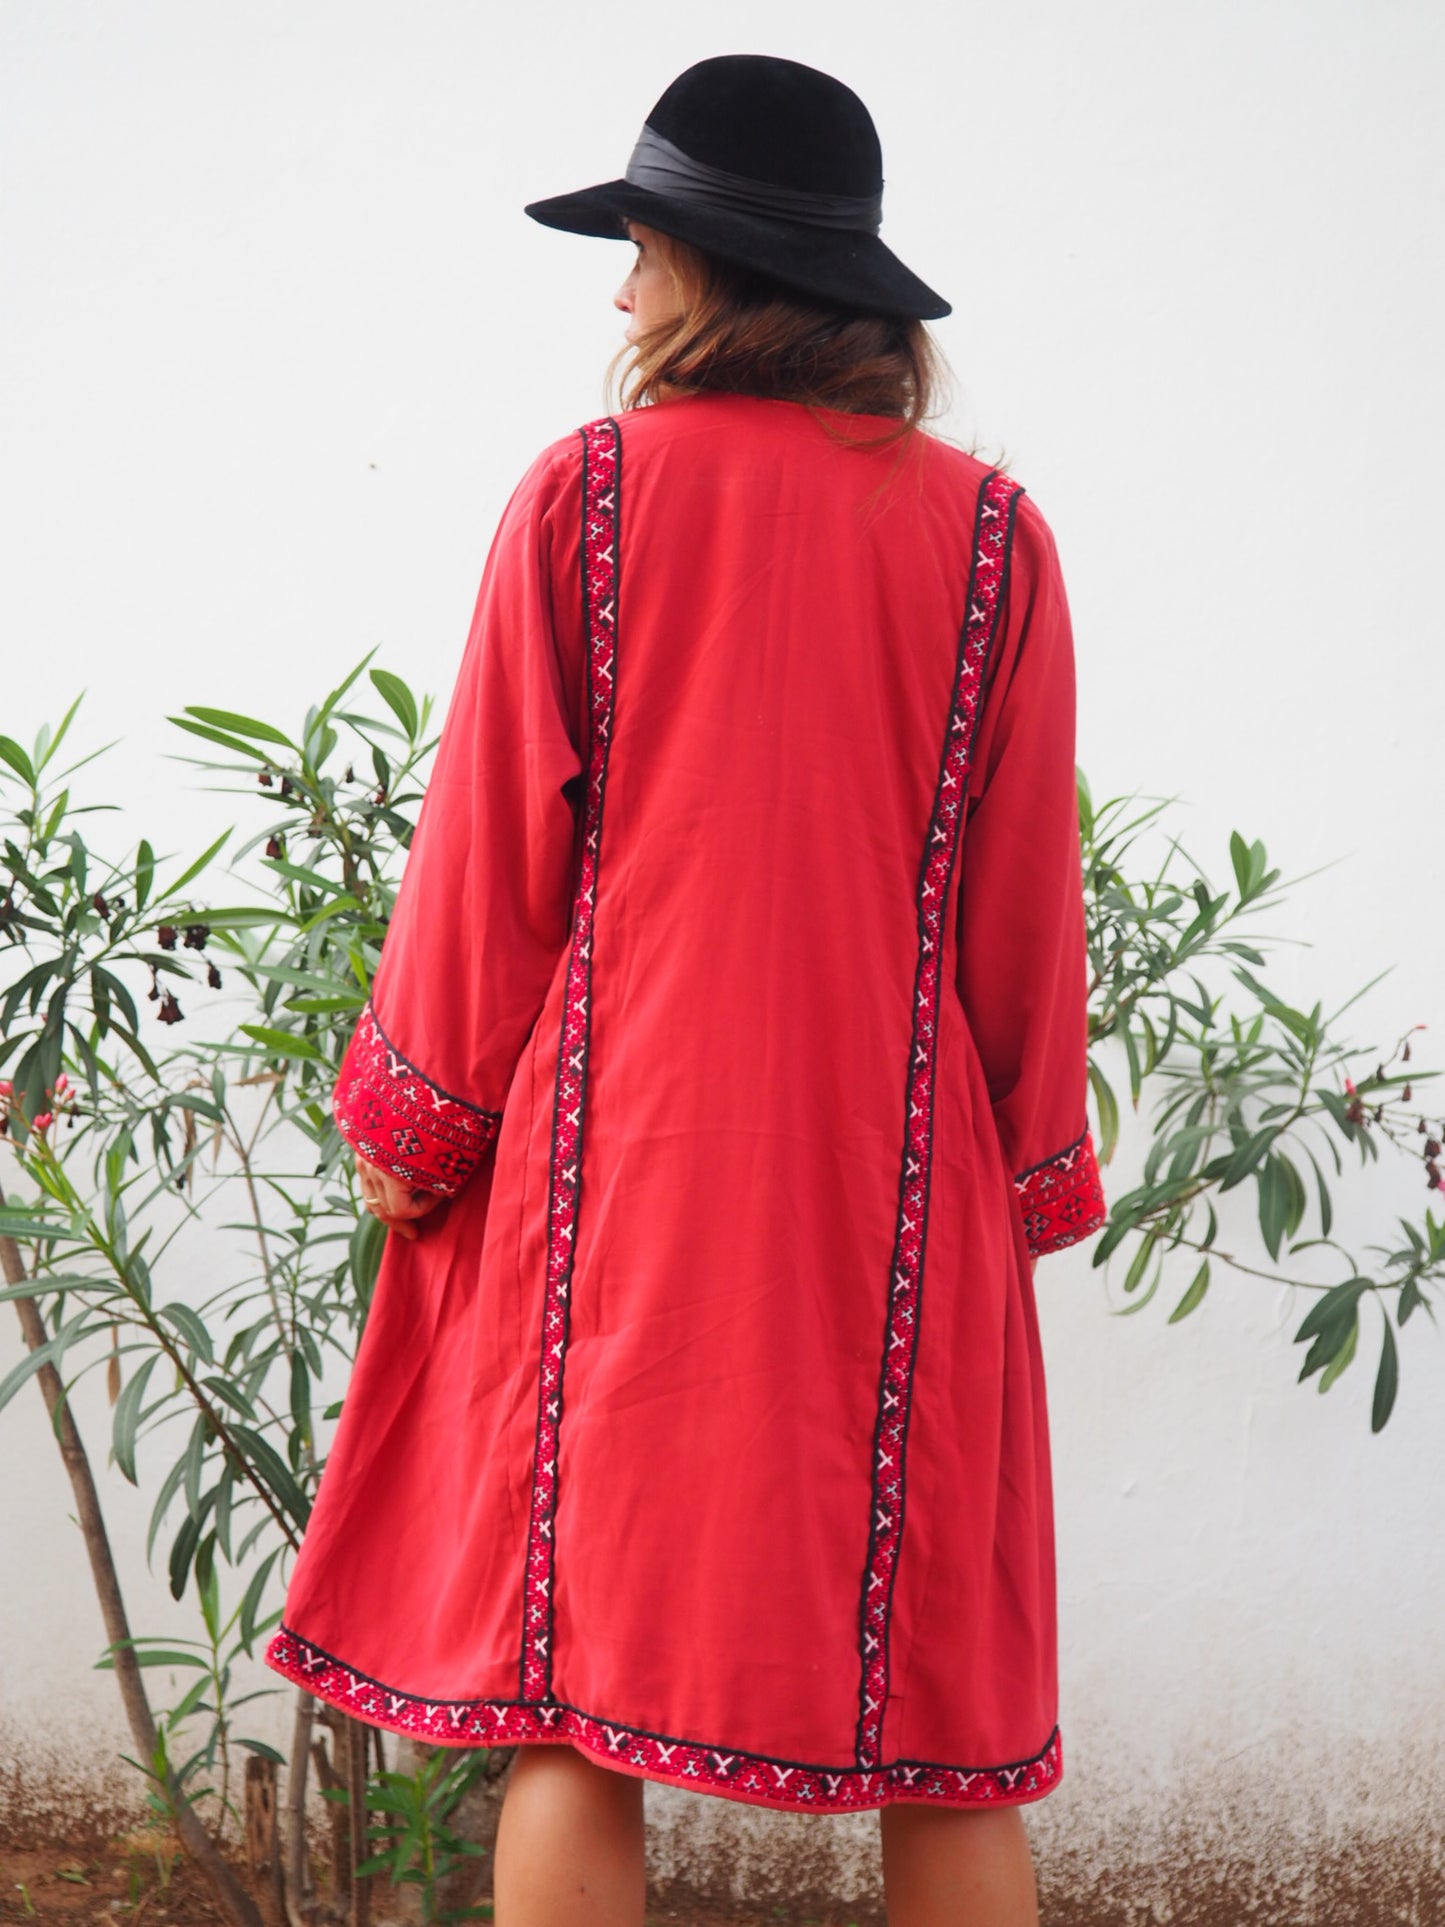 Vintage 1970’s Pakistán hand embroidered Kaftan dress